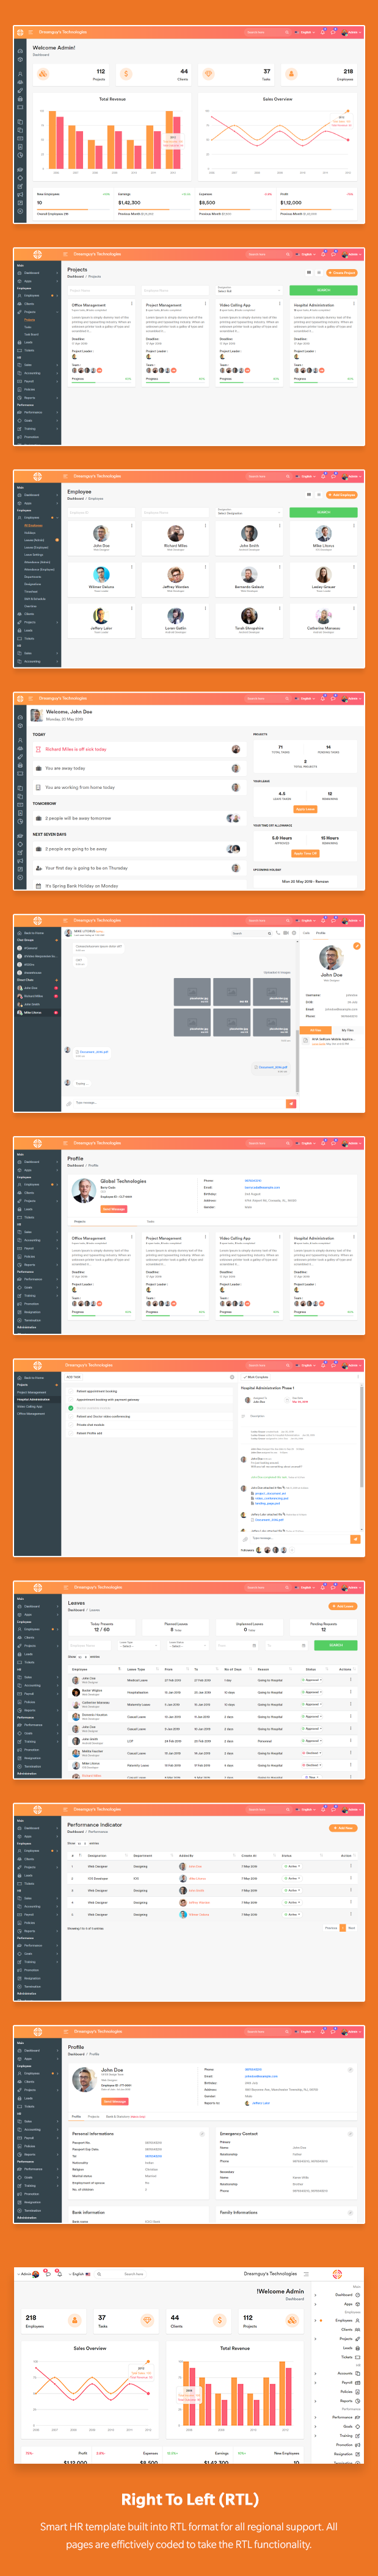 SmartHR - HR Payroll Project & Employee Management Bootstrap React Admin Dashboard Template (ReactJS - 3